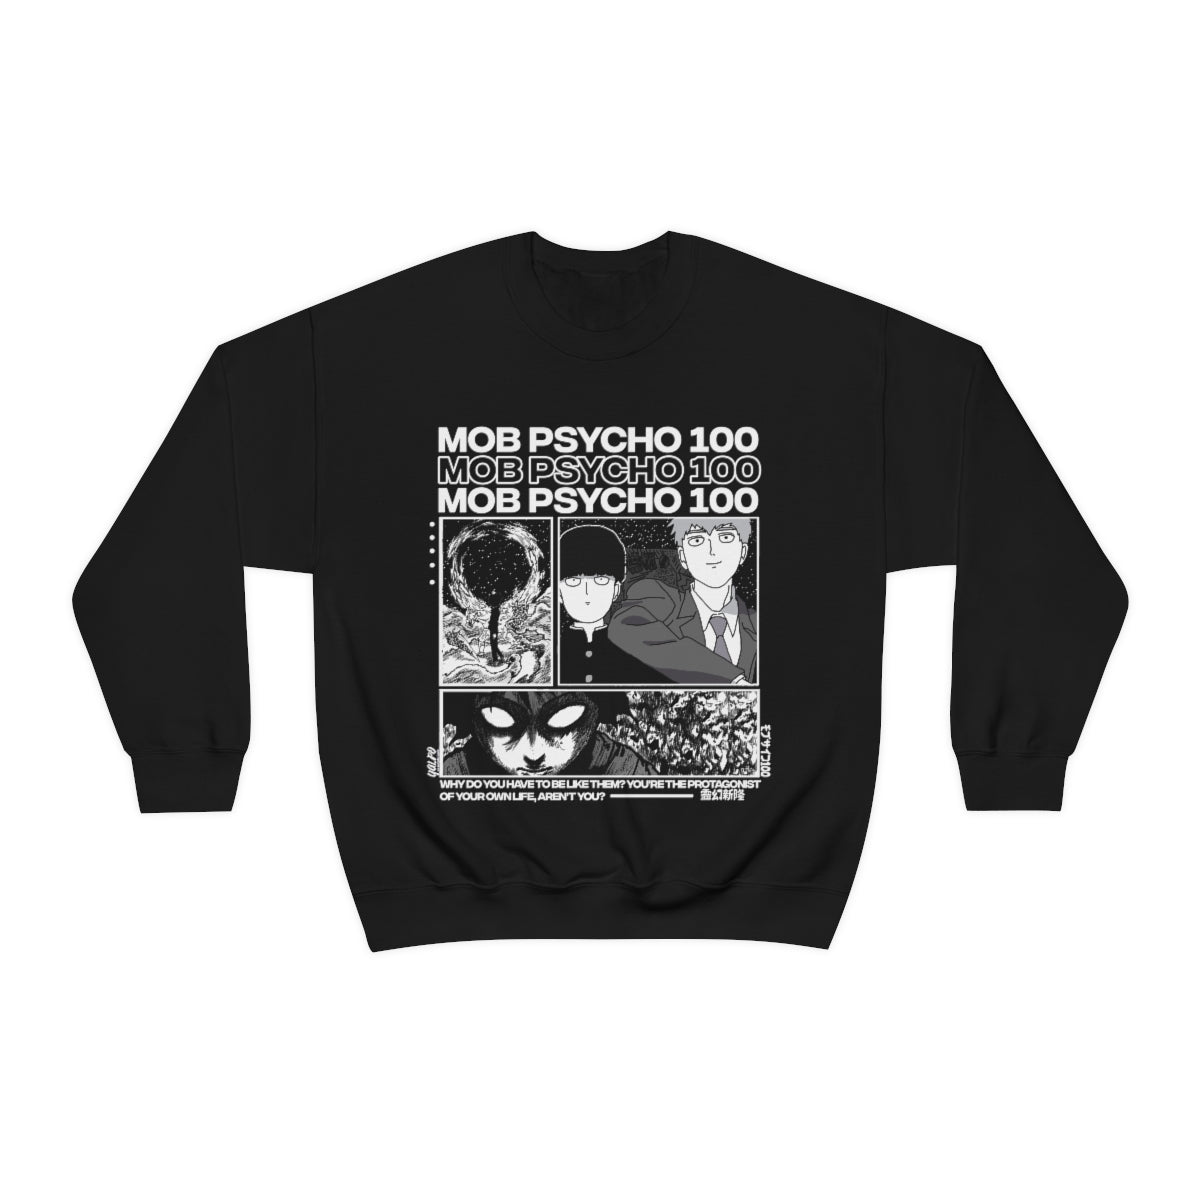 Mob Psycho 100 Sweatshirt, Shigeo Kageyama, Anime shirt, Mob Sweatshirt, Mob Psycho Hoodie, Aesthetic, Reigen,Japanese, Unisex